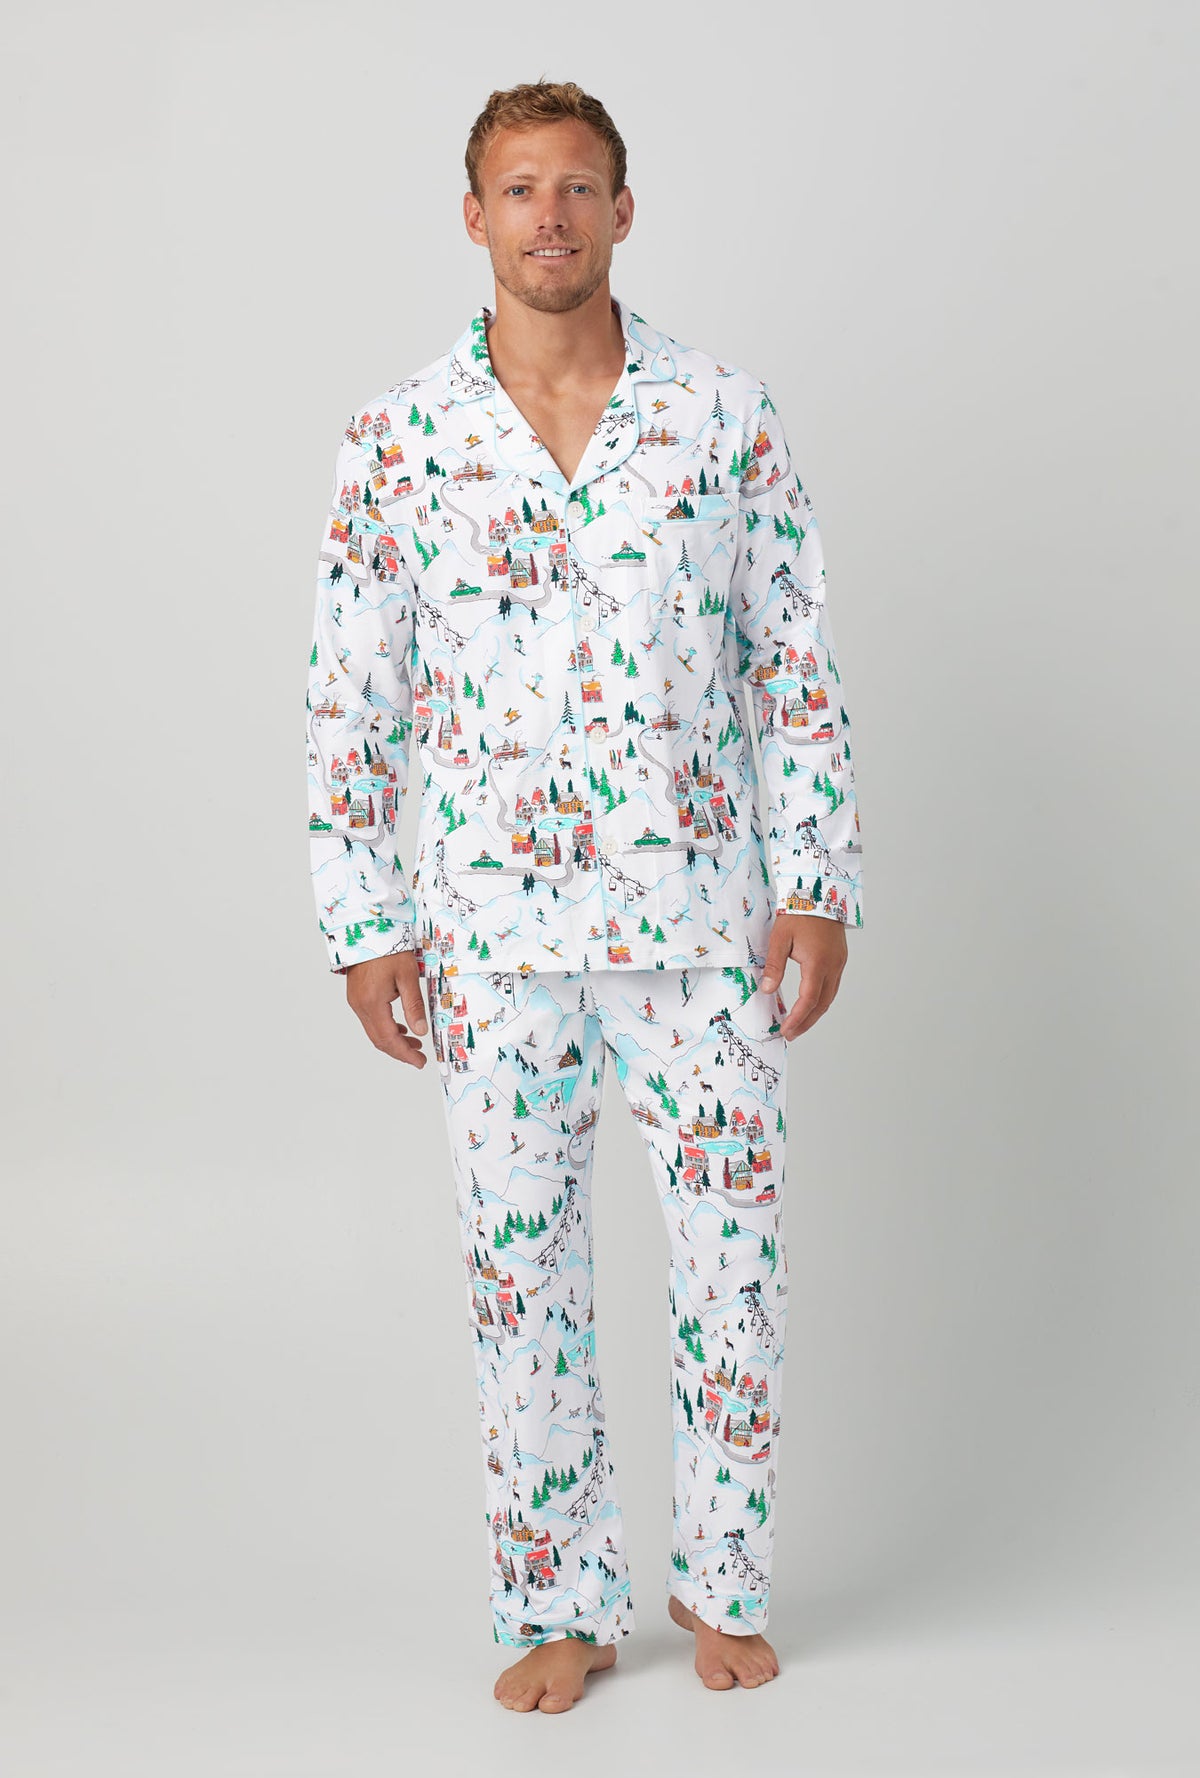 Super Comfy Pajamas – Pajama Village Canada